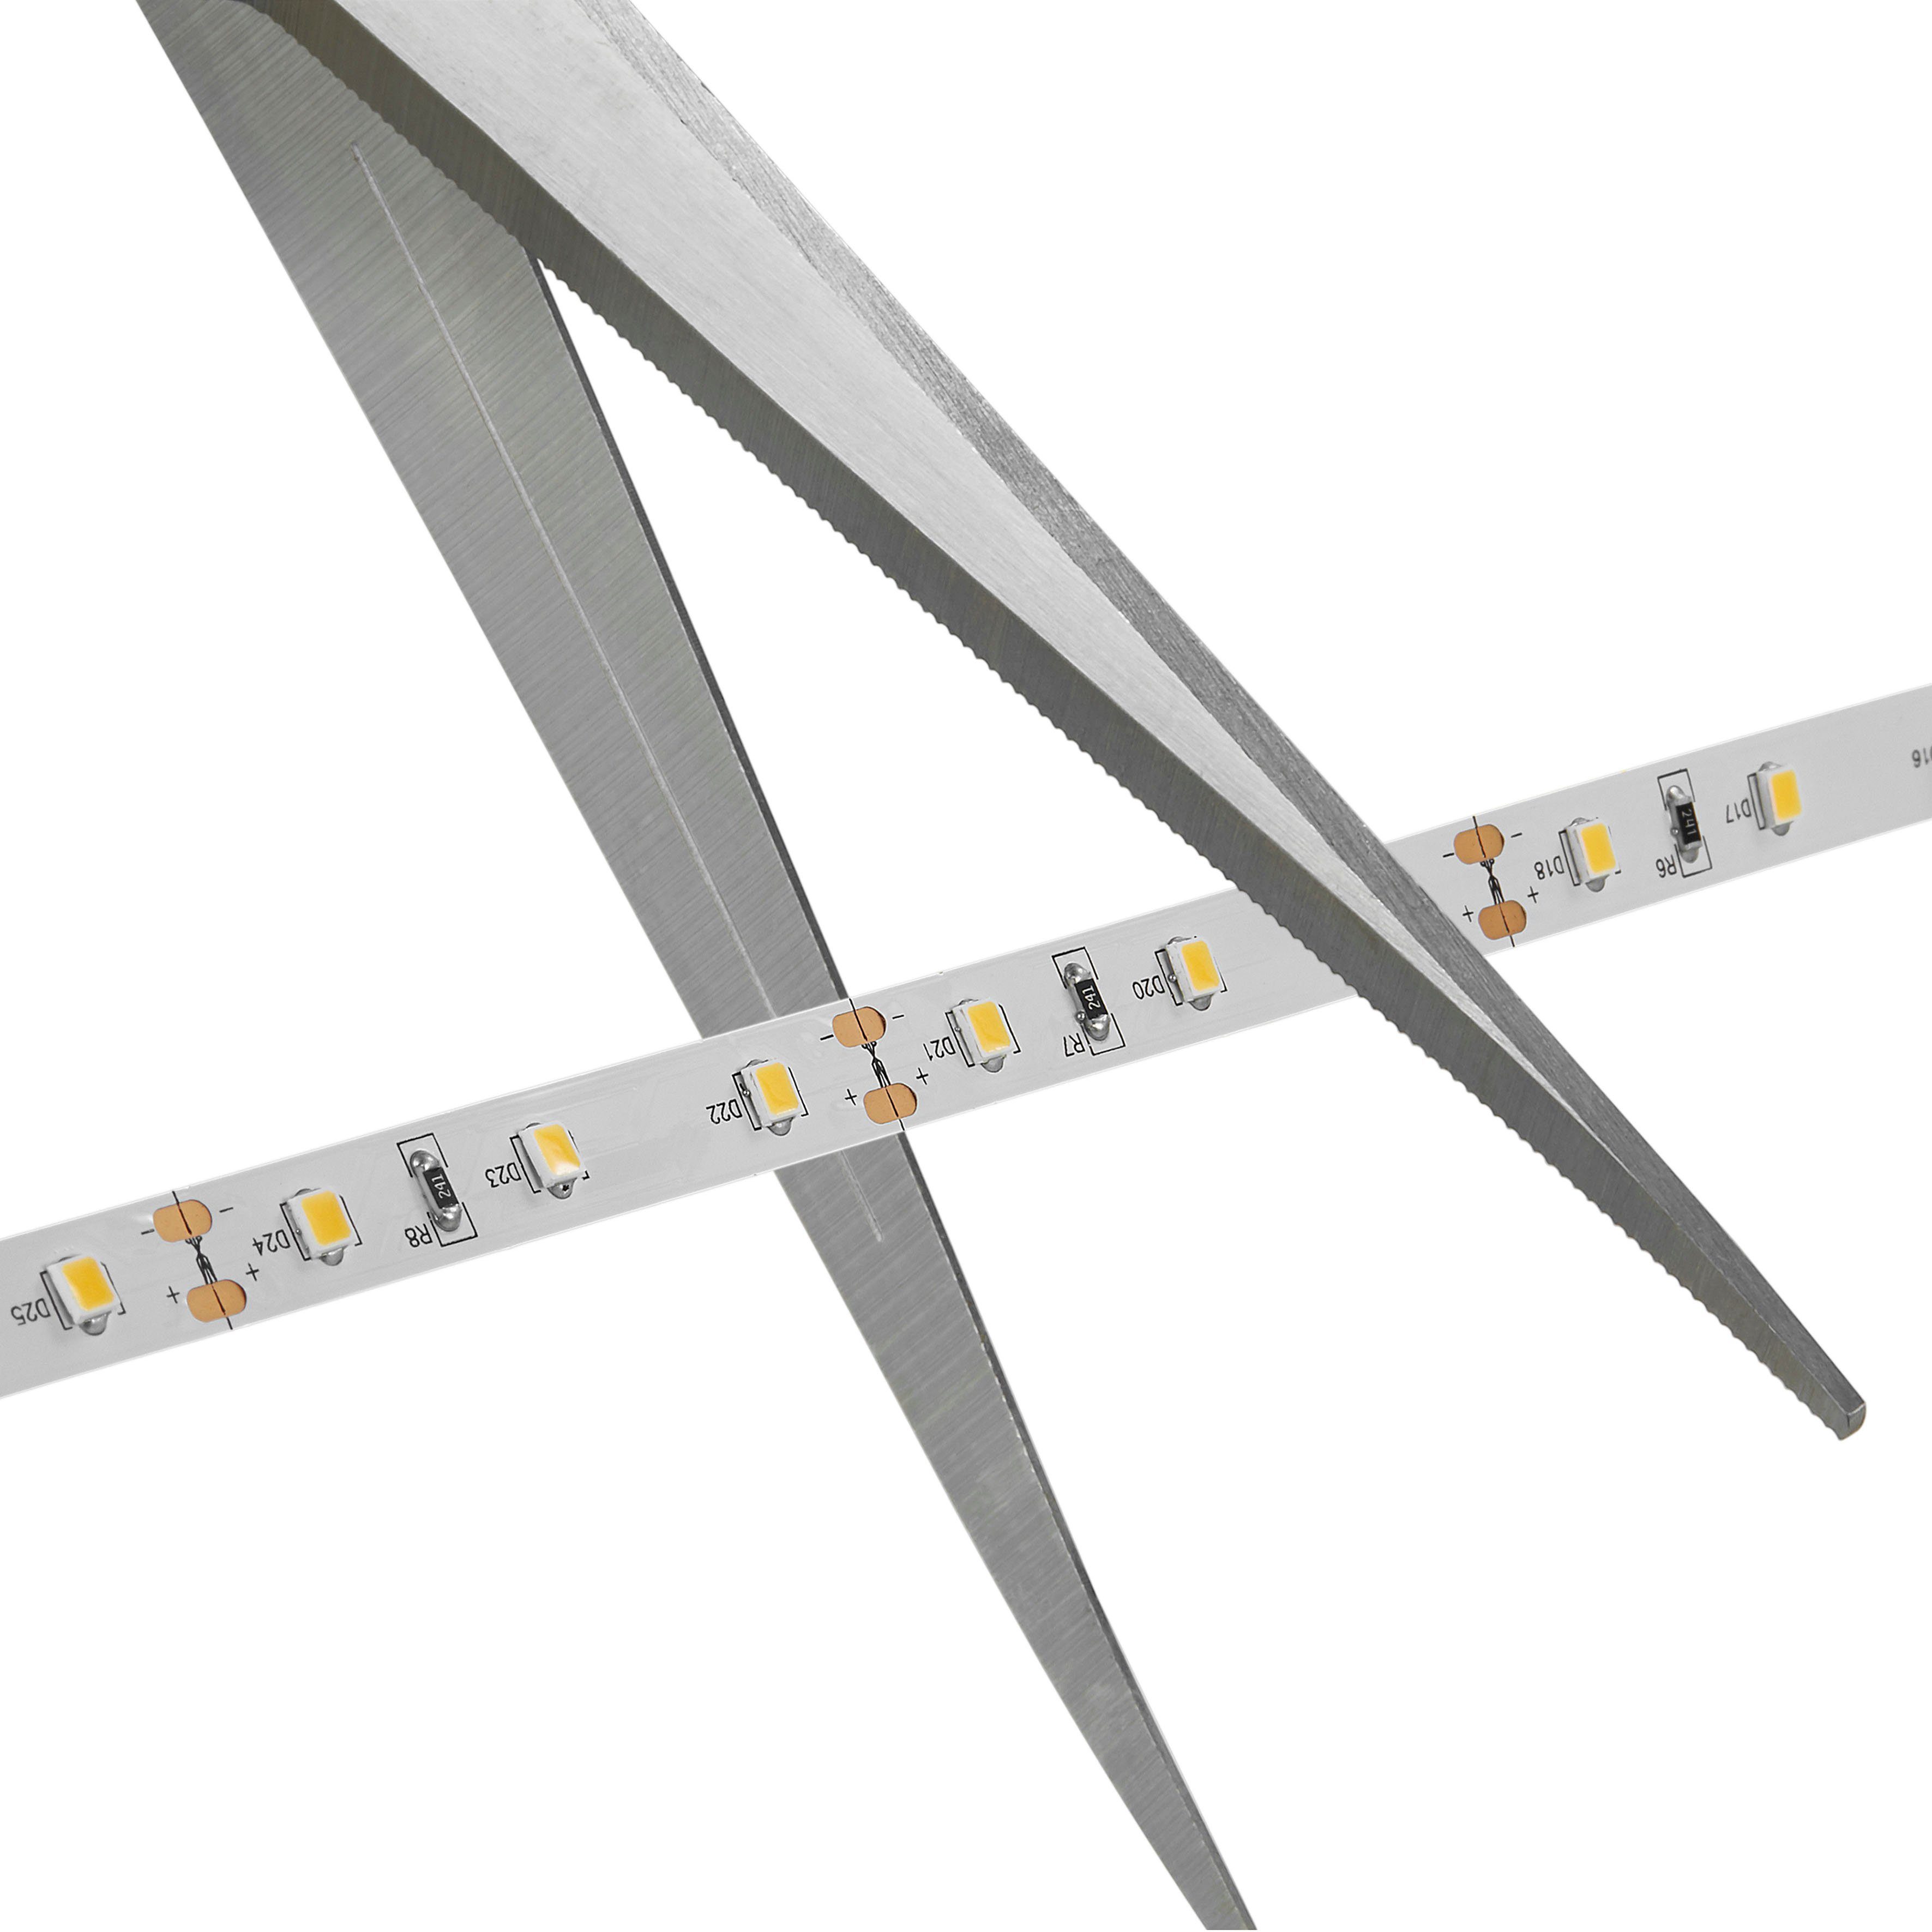 Nordlux LED – Klebeband wiederverwendbar Stripe Streifen, Einfach Ledstrip, anzubringen auf